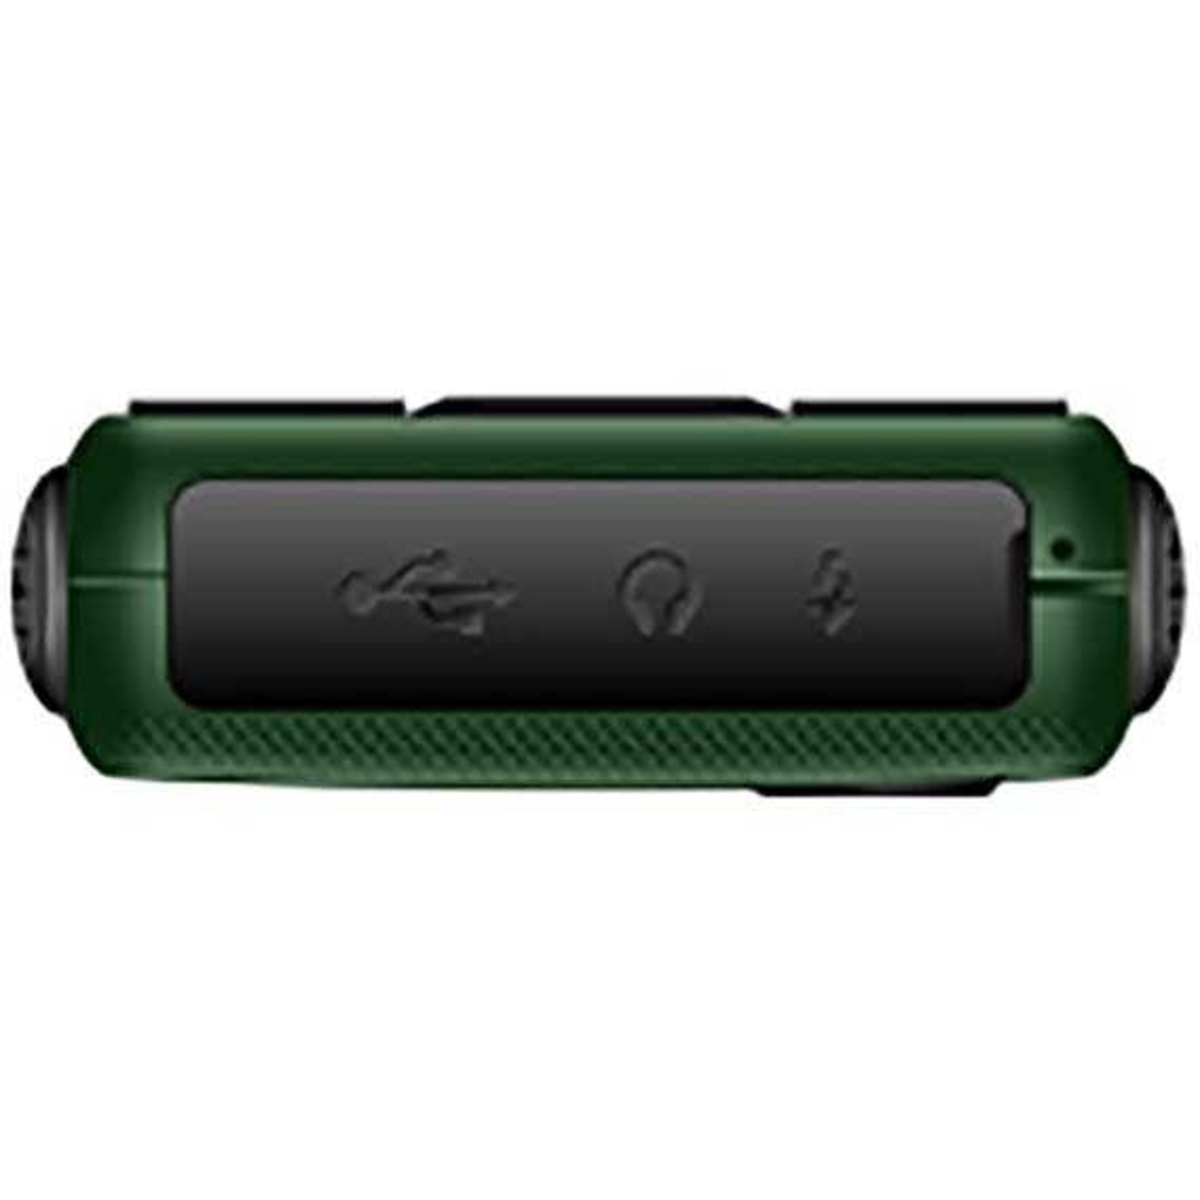 Мобильный телефон Philips Xenium E218 (Цвет: Dark Green)